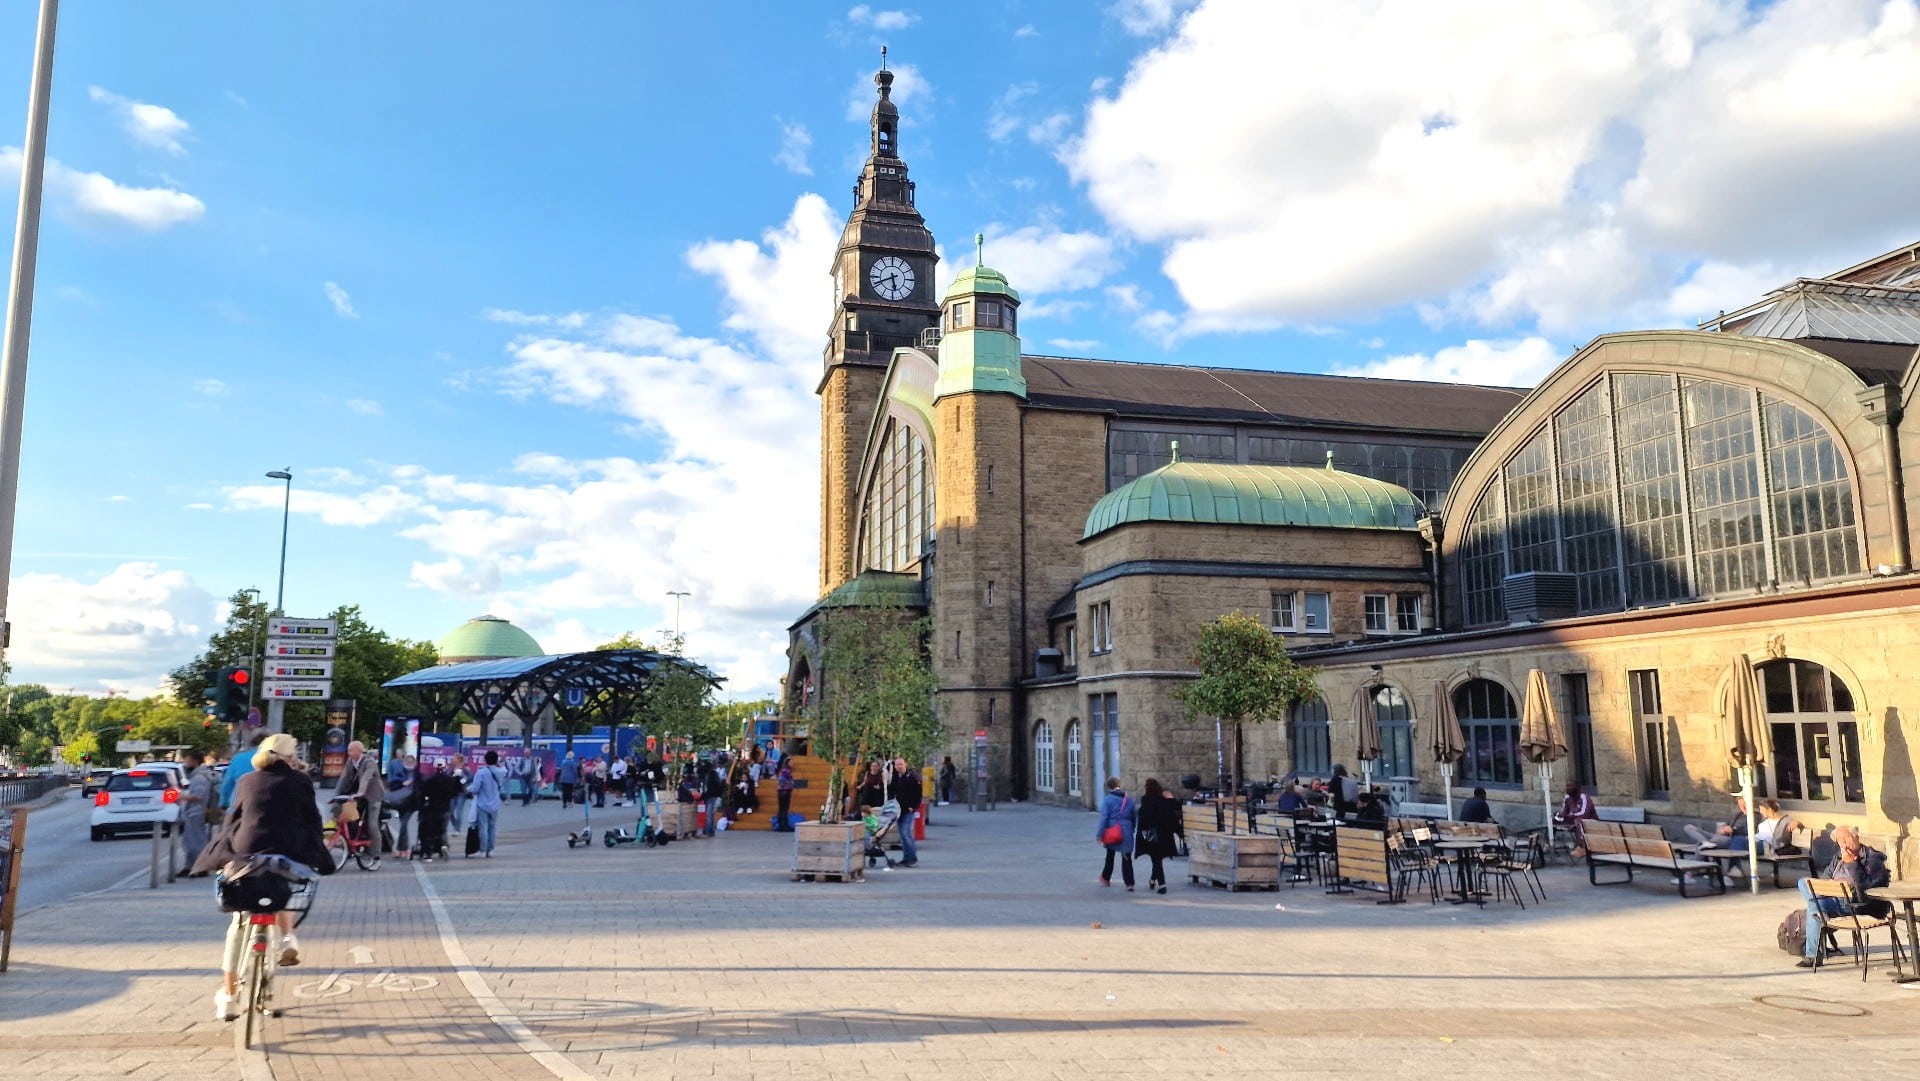 Sede della Hauptbahnhof, St Georg è un grande quartiere di Amburgo ricco di hotel economici.